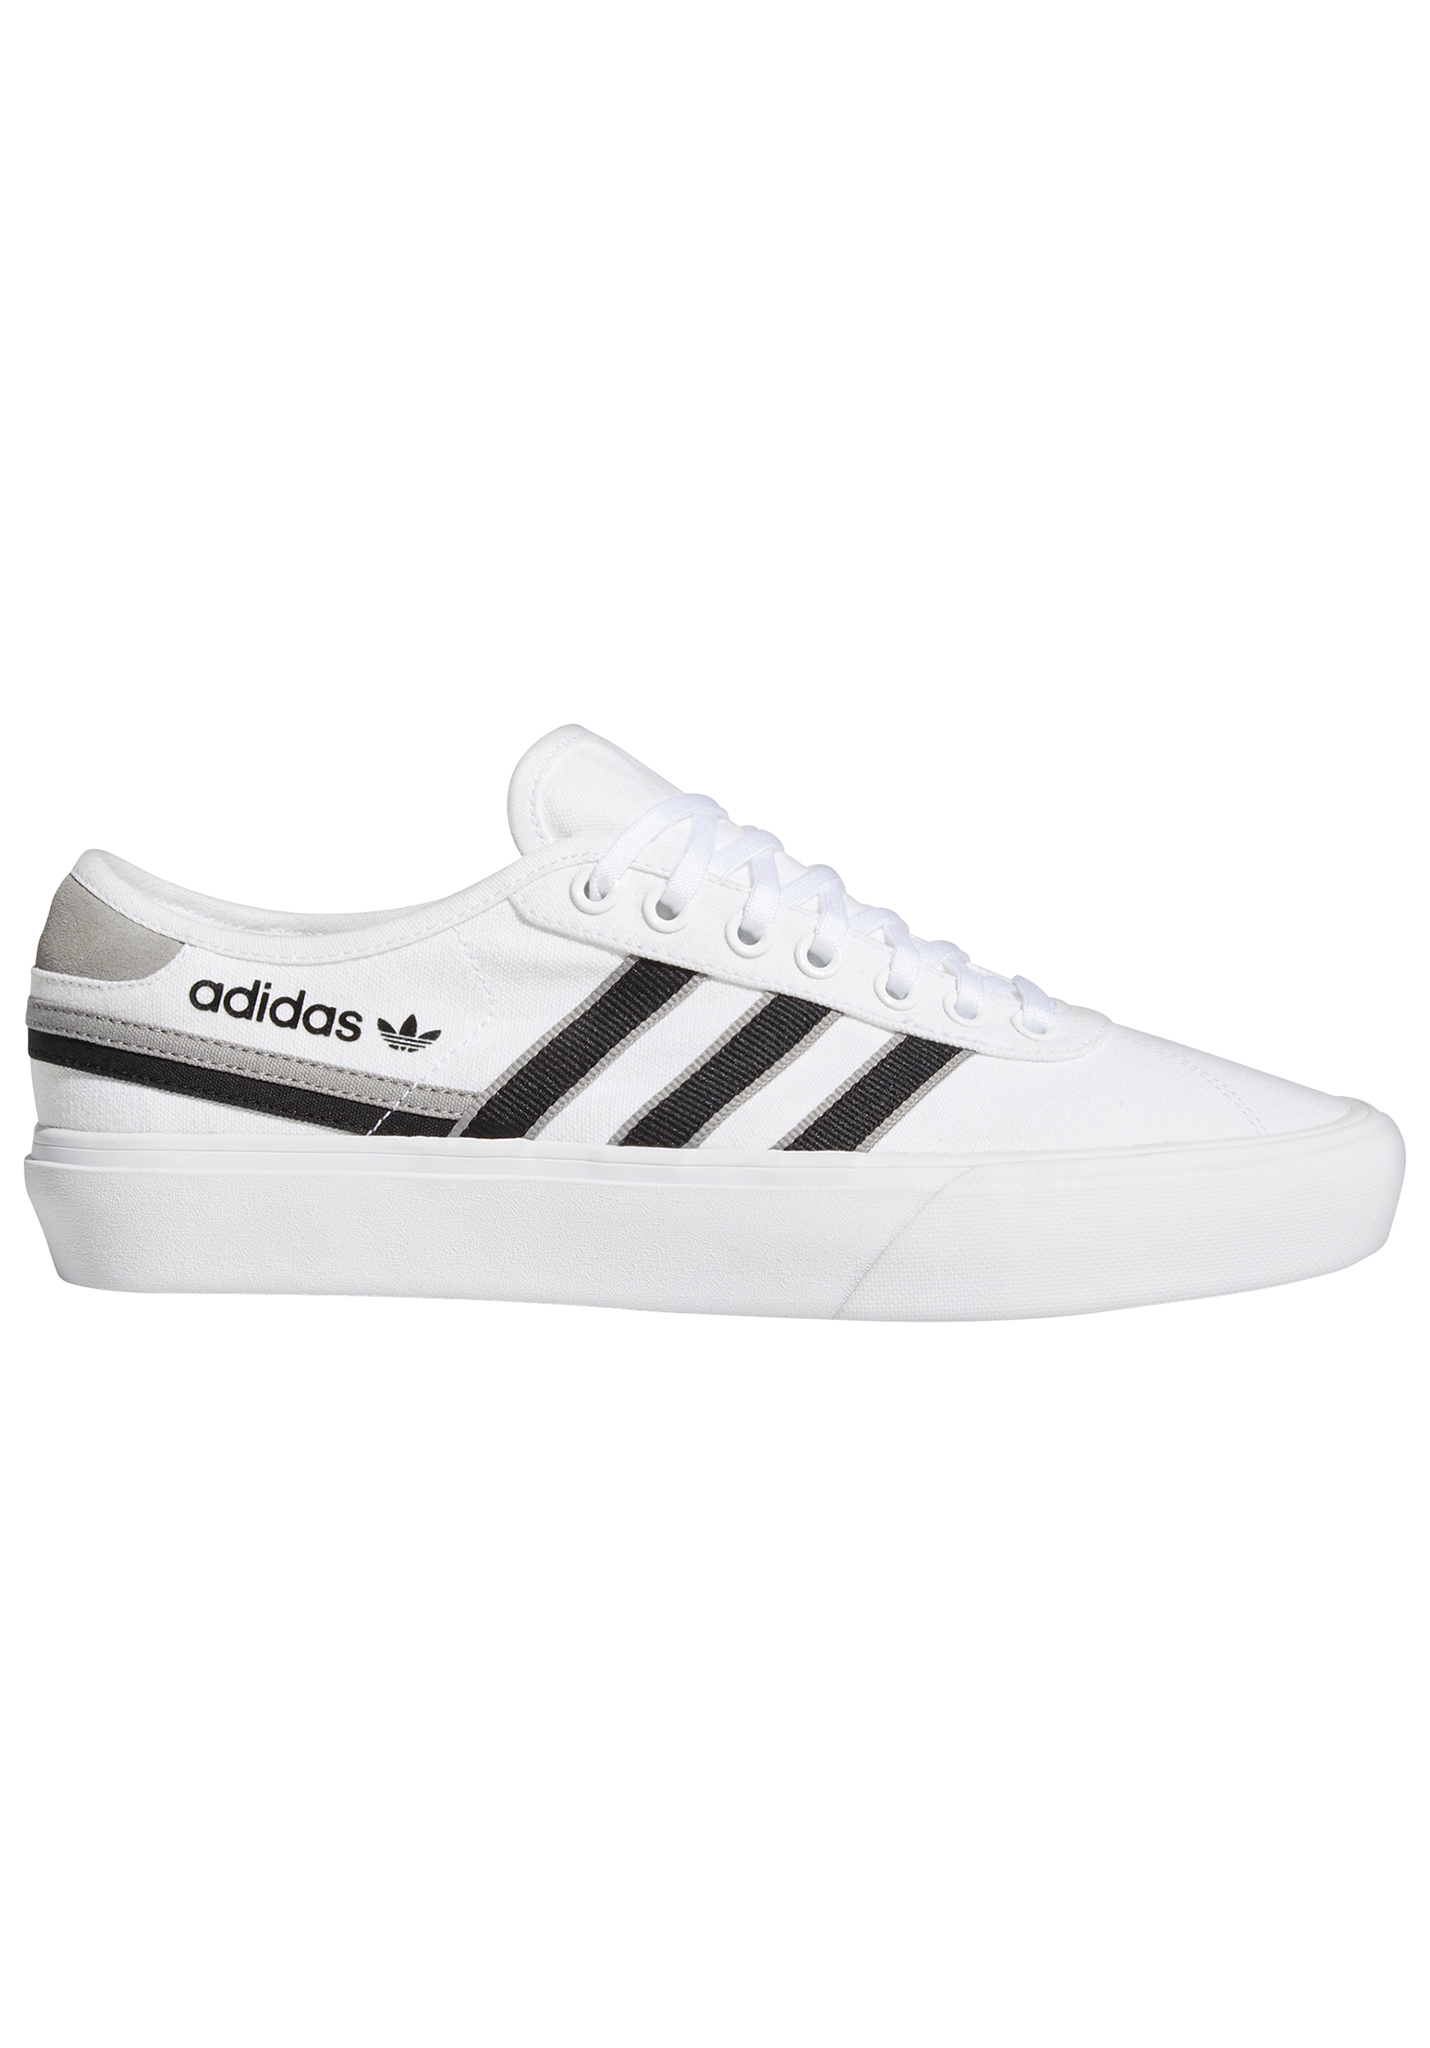 Adidas Originals Delpala Sneaker schuhwerk weiß/schwarz 41 1/3